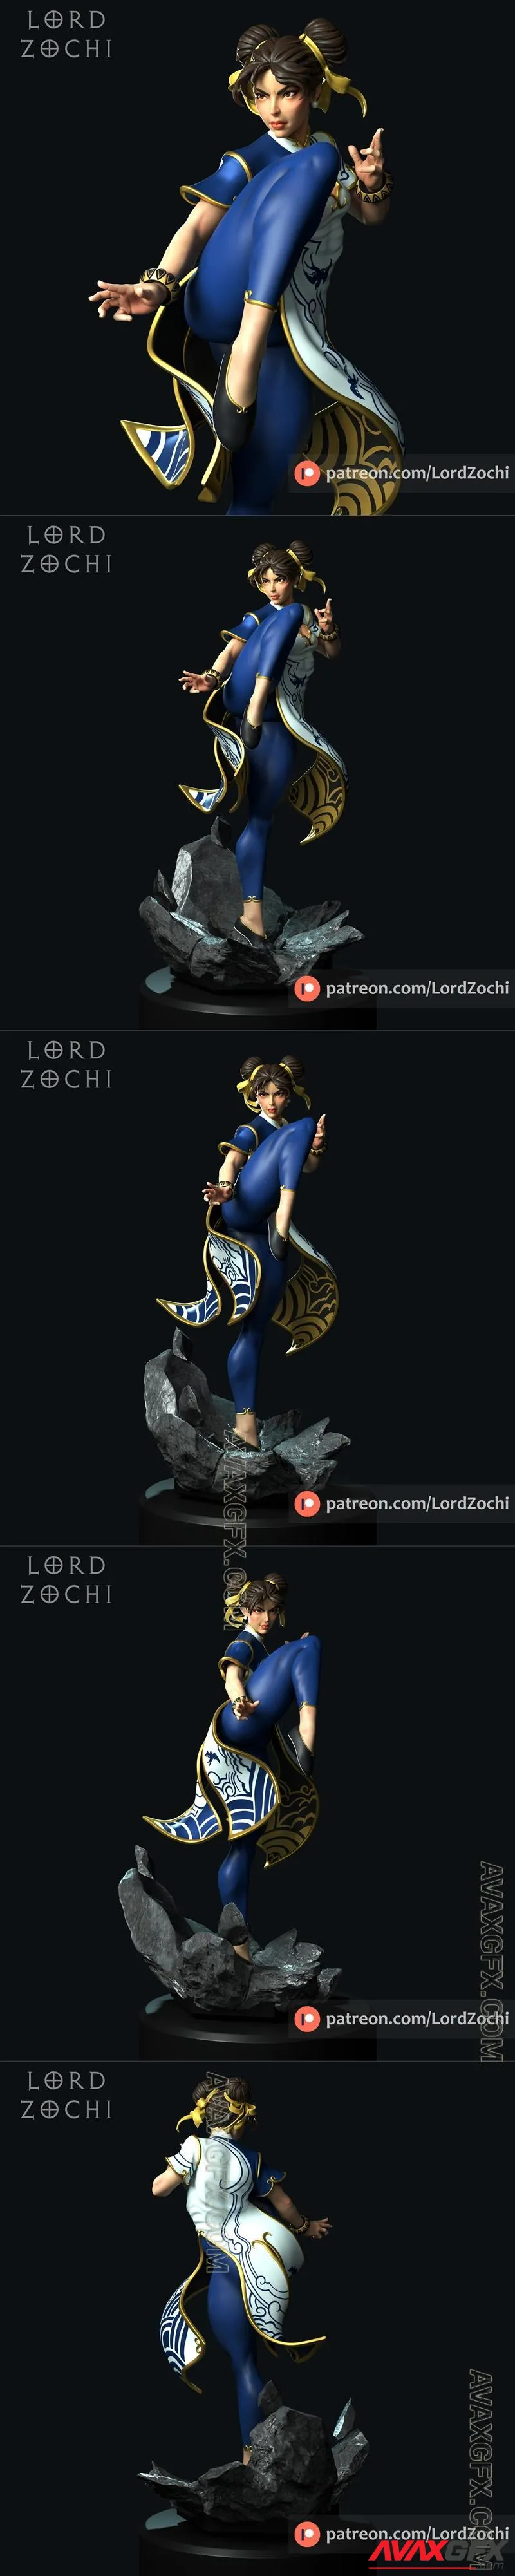 Lord Zochi - Chun Li - STL 3D Model